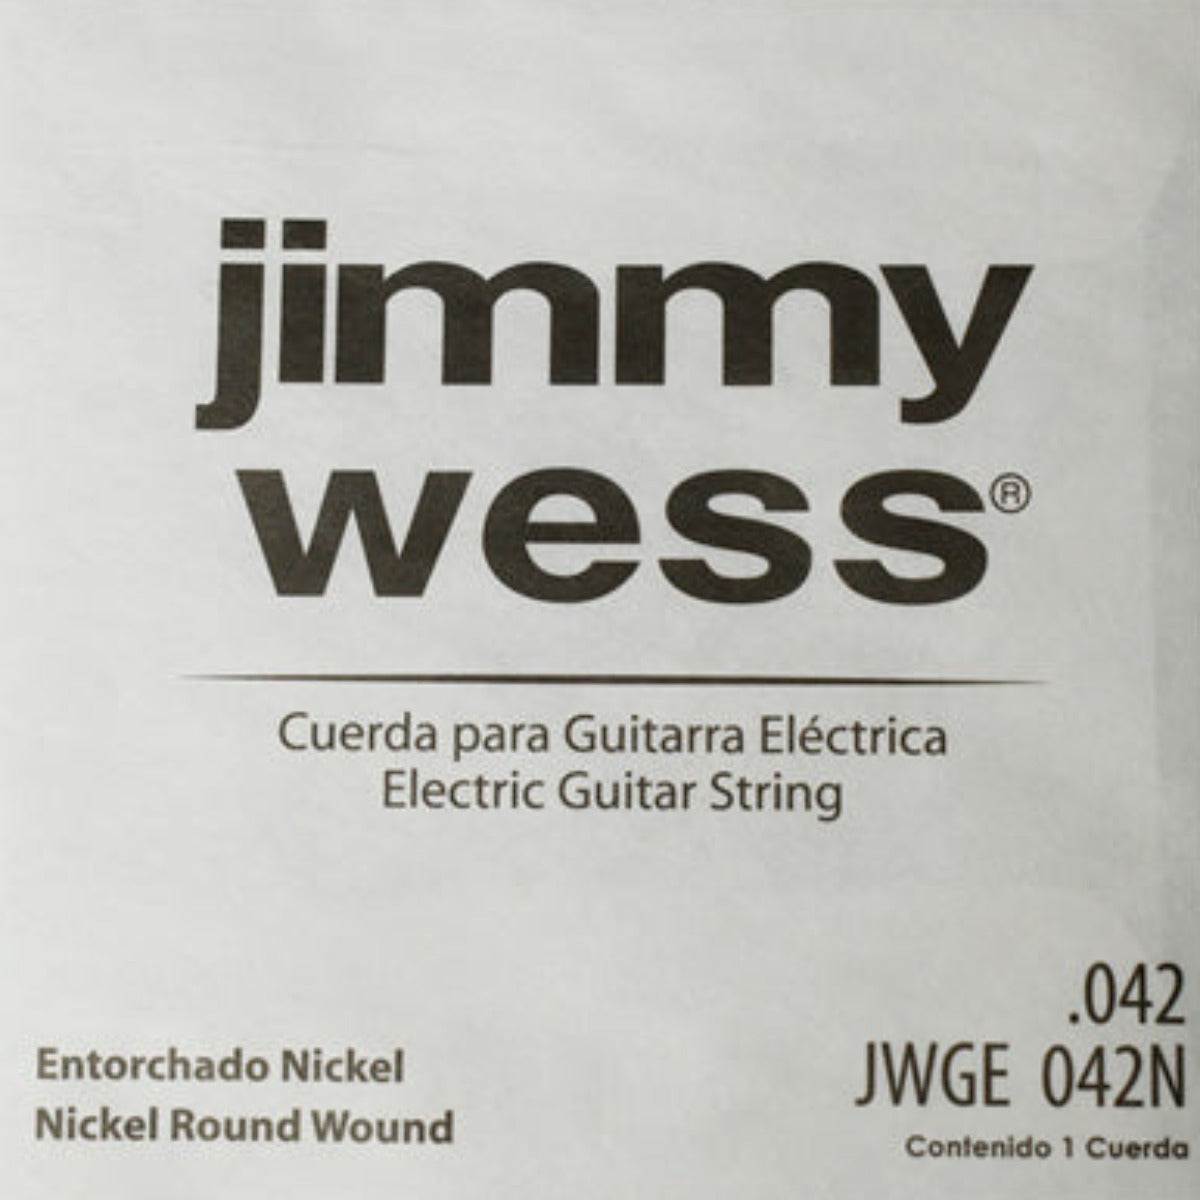 CUERDA P/GUITARRA ELECTRICA JIMMYWESS PRO 6A NIQ42